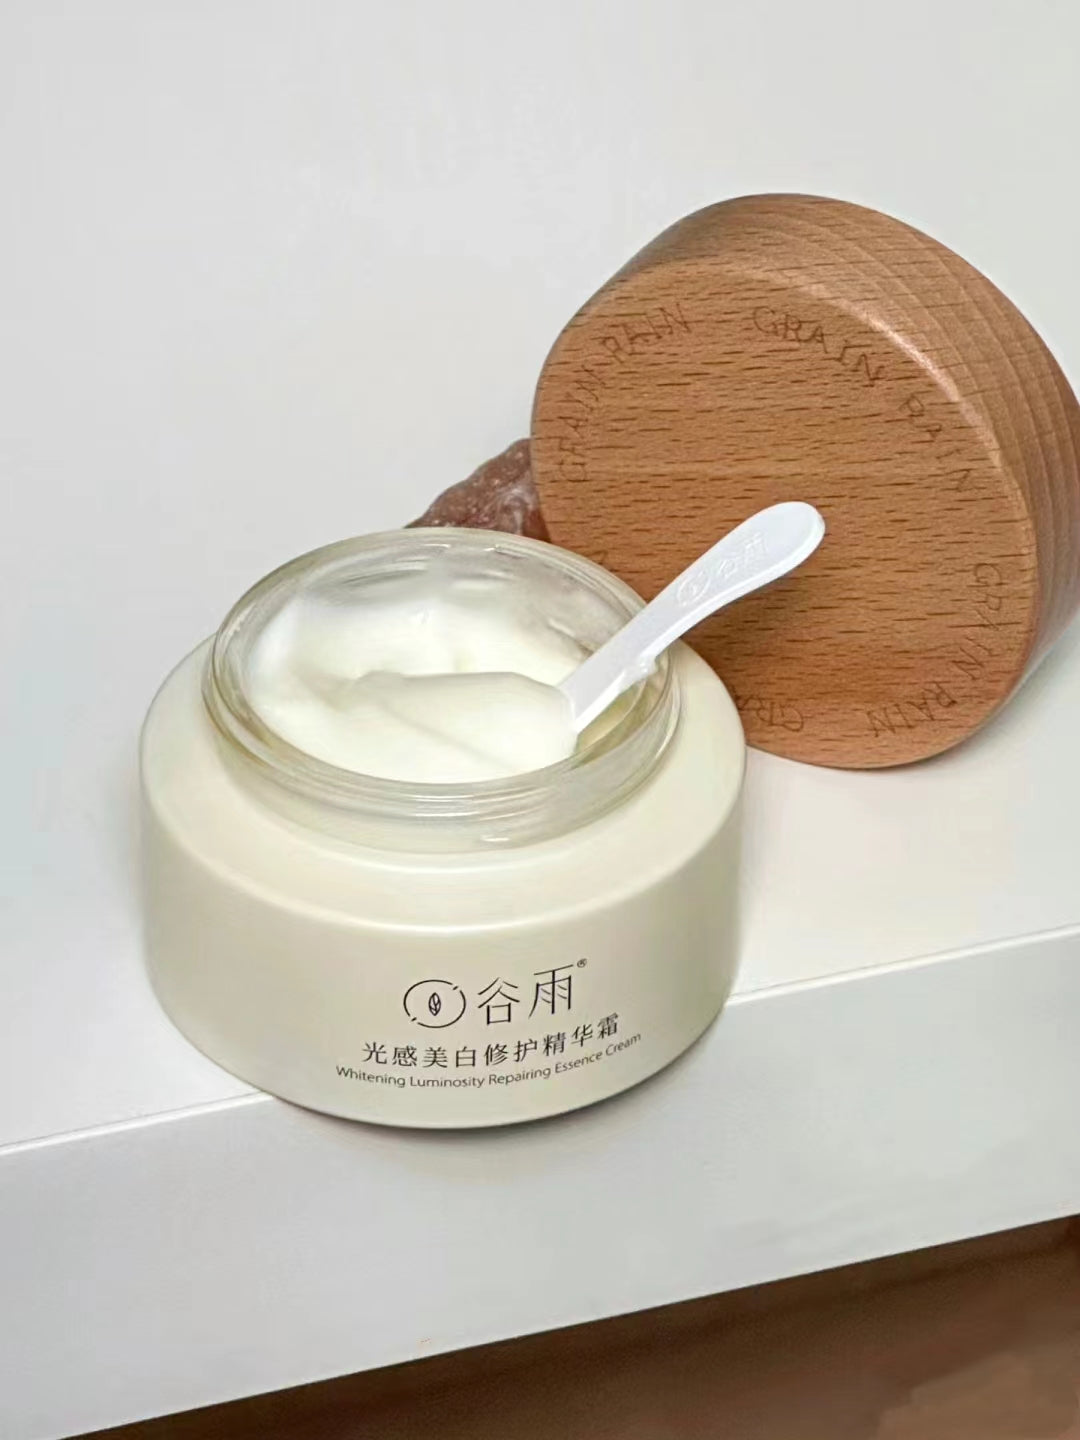 GUYU Whitening Luminosity Repairing Essence Cream 30g/50g 谷雨光感美白修护精华霜